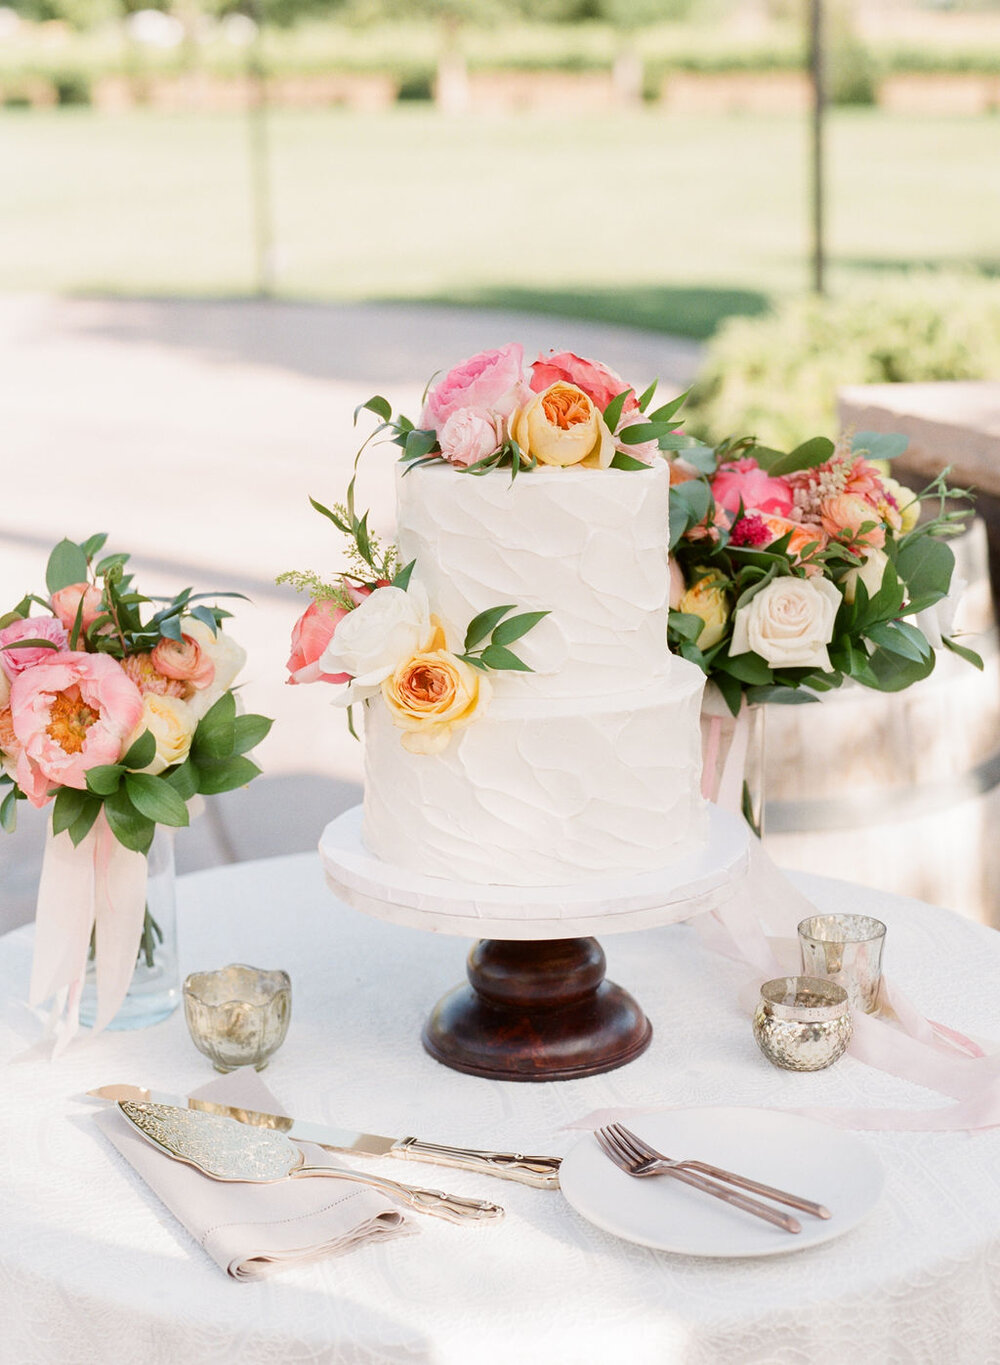 BriandDylan-Married-AshleyBaumgartner-WeddingDetails-cake-citrusflowers-VioletteFleurs.jpg